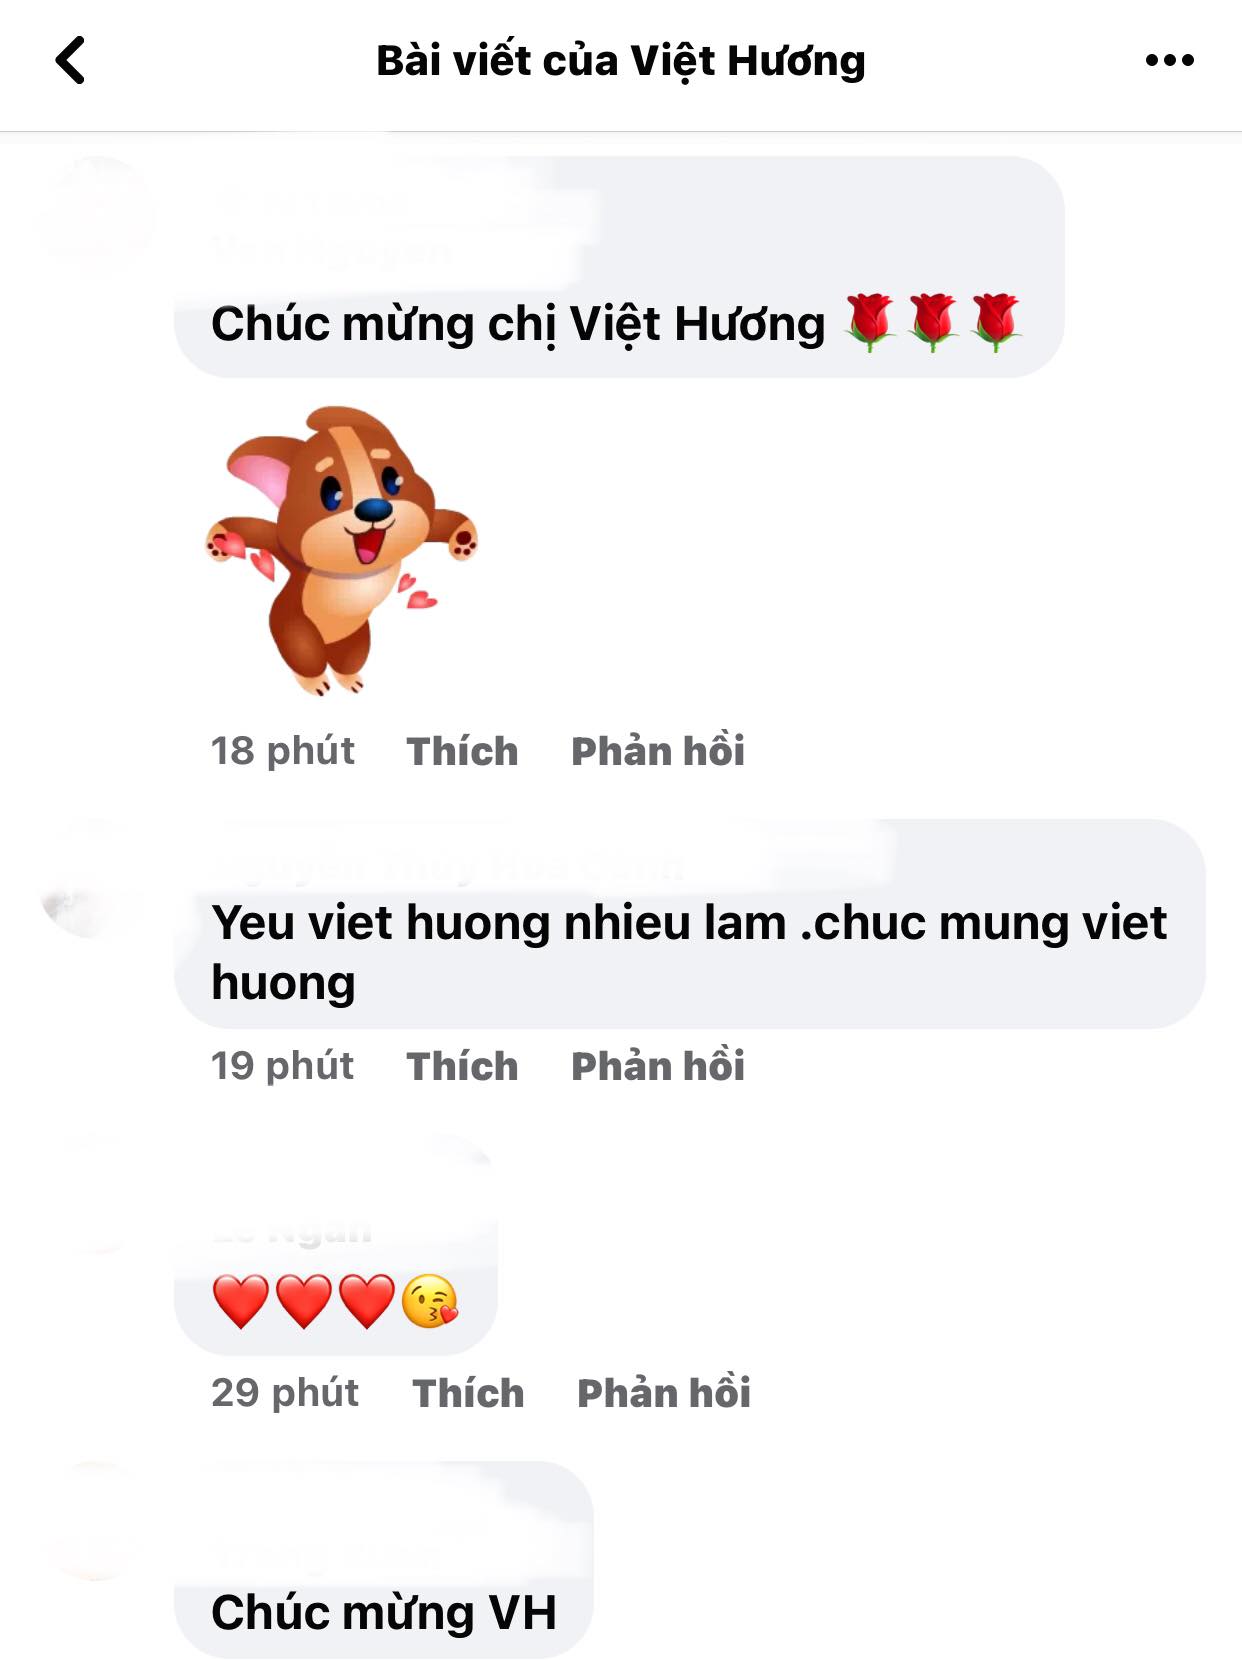 Viet-huong-phan-khoi-bao-tin-vui-ve-cong-viec-sau-nhieu-ngay-mong-cho-khan-gia-no-nuc-chuc-mung